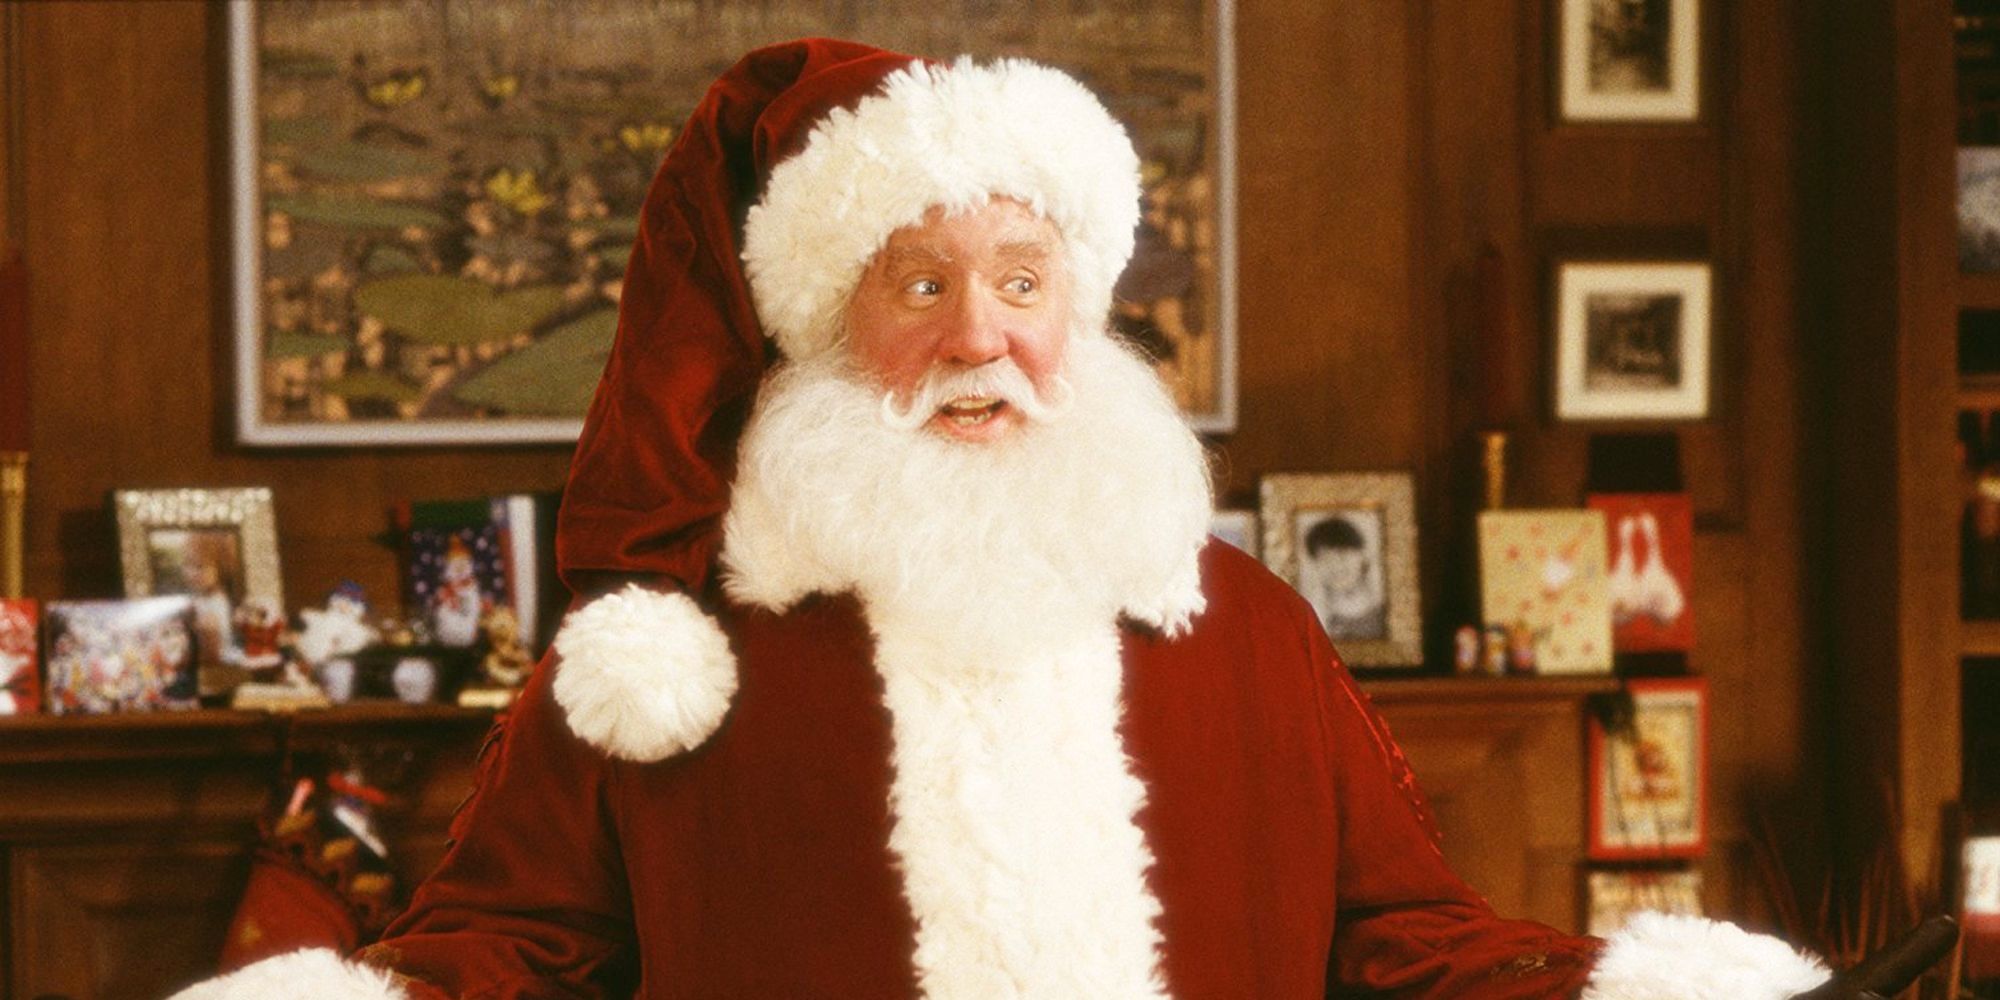 Santa Clause 4 Updates Will The Tim Allen Sequel Happen?